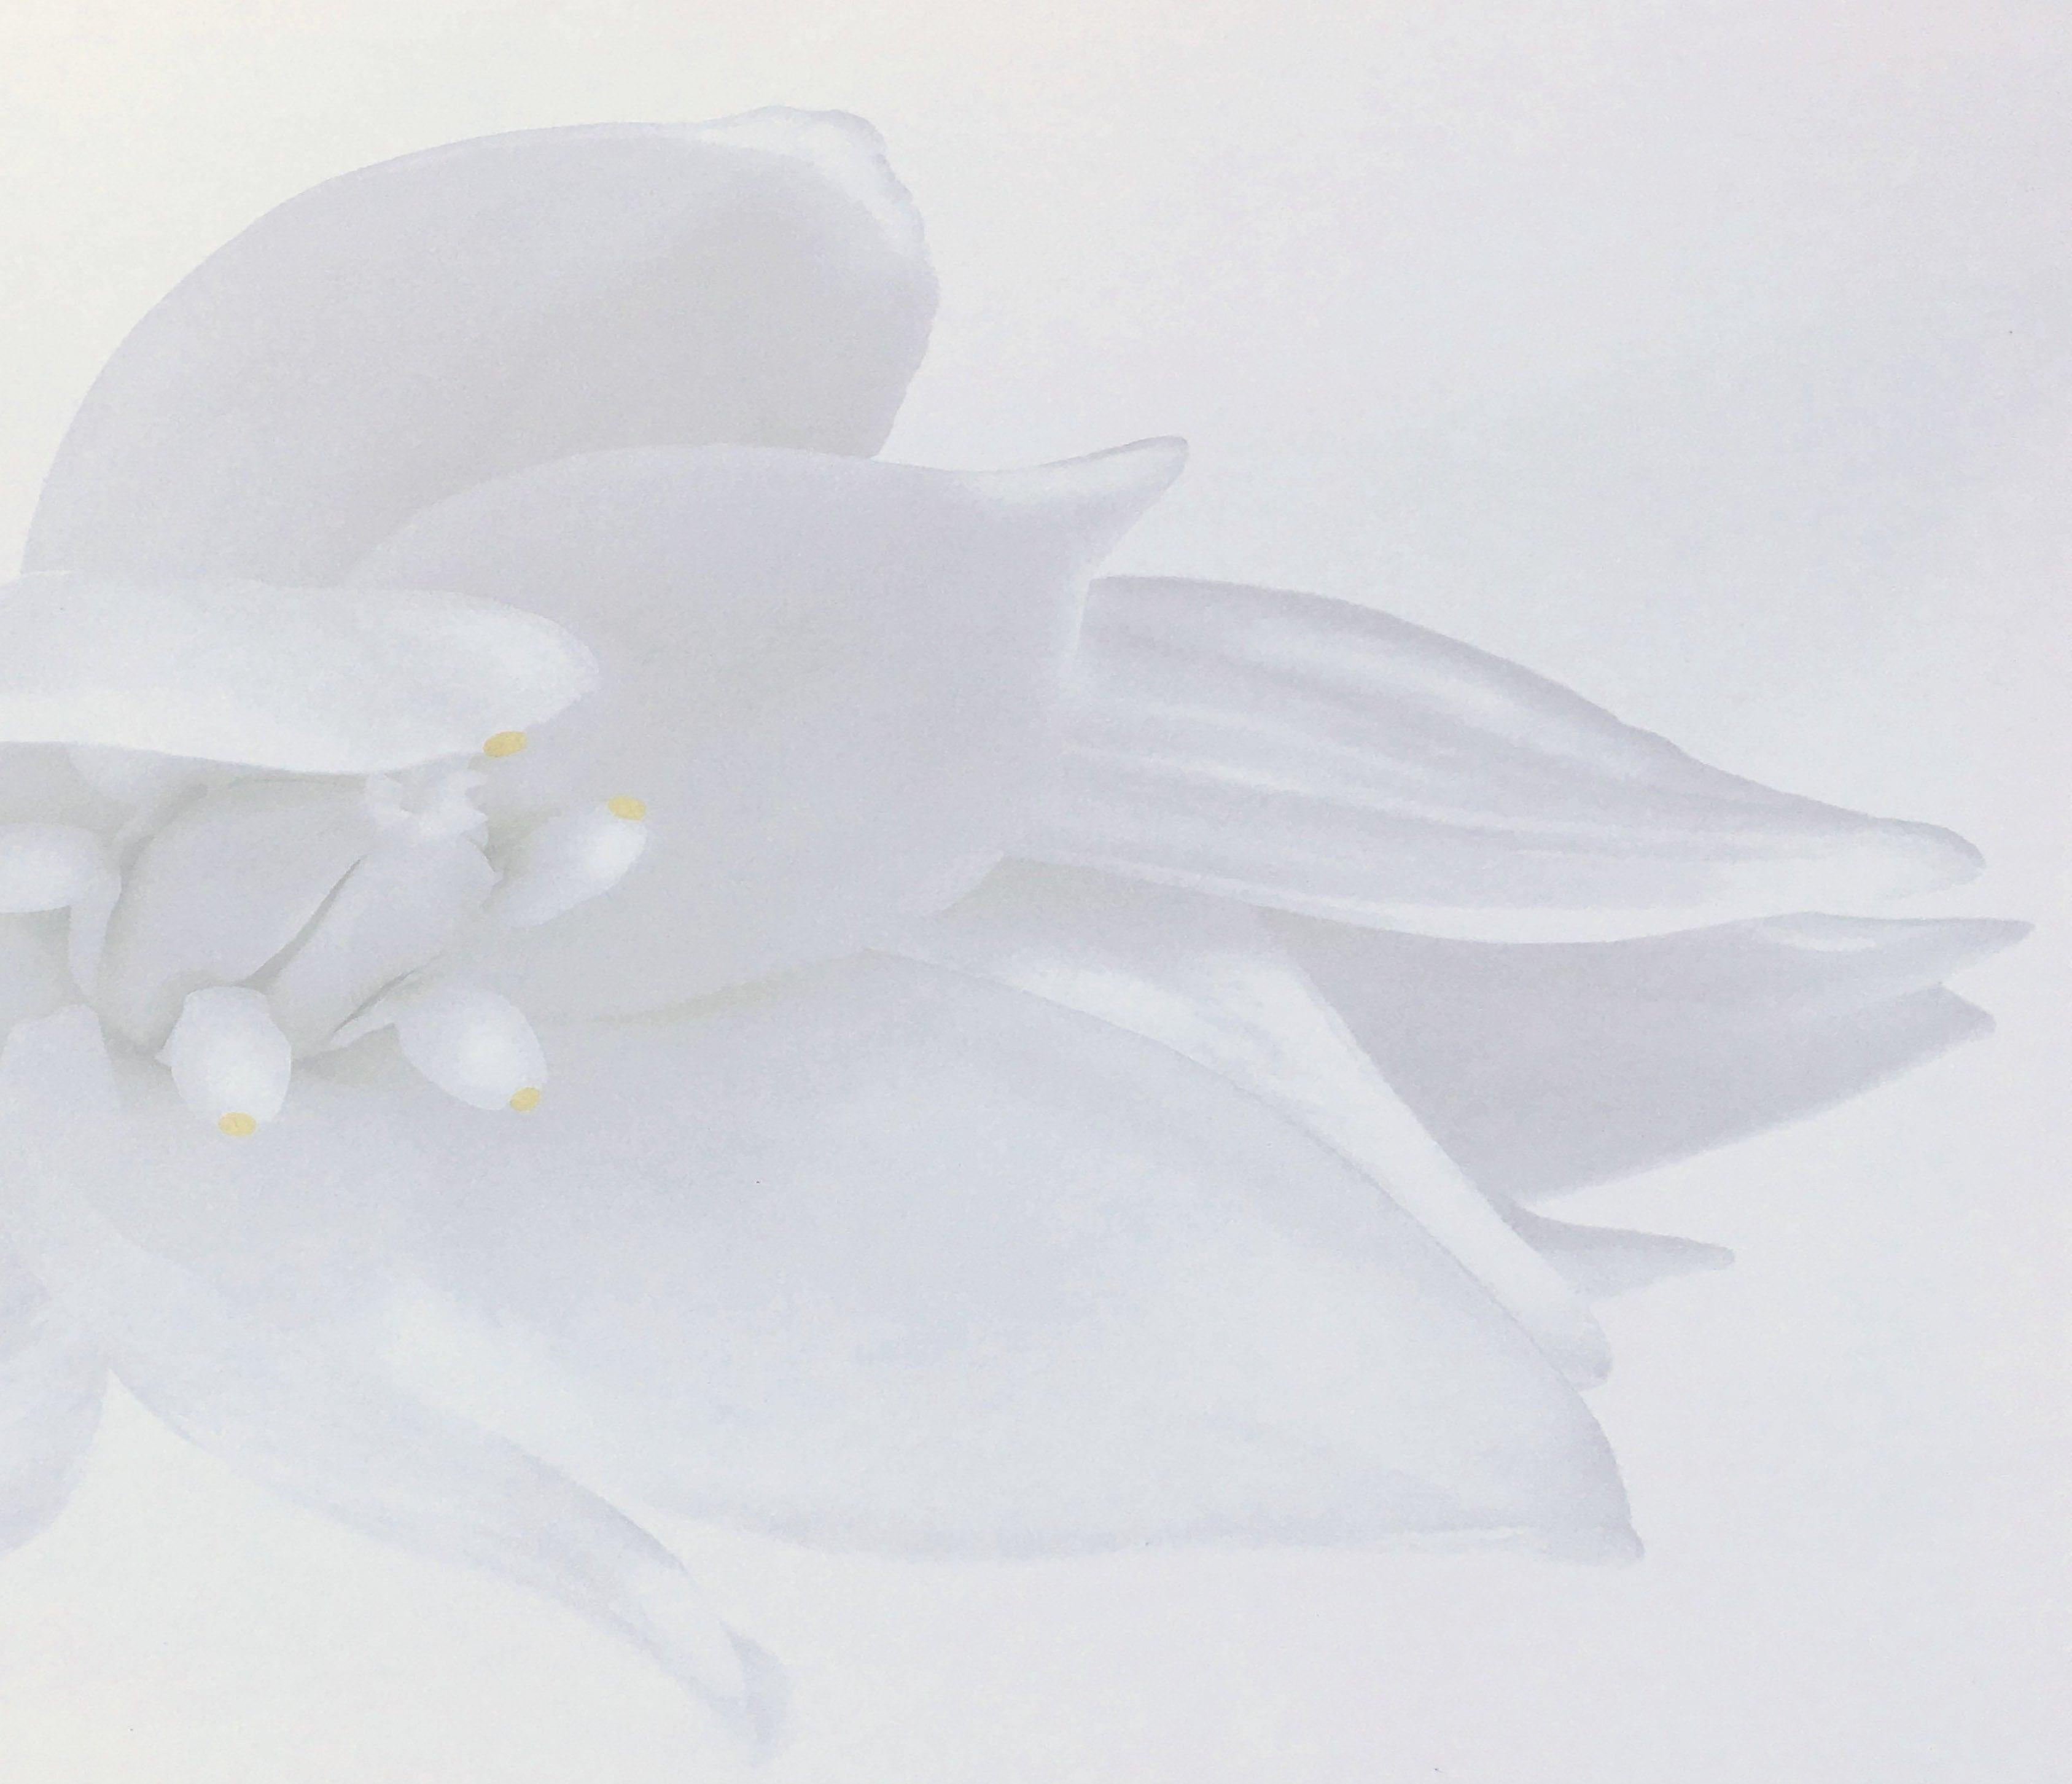 Rapture, Weiße Blumenschrank-Schrank-Fotografie in Schwarz-Weiß auf Plexiglas (Minimalistisch), Photograph, von Iran Issa-Khan